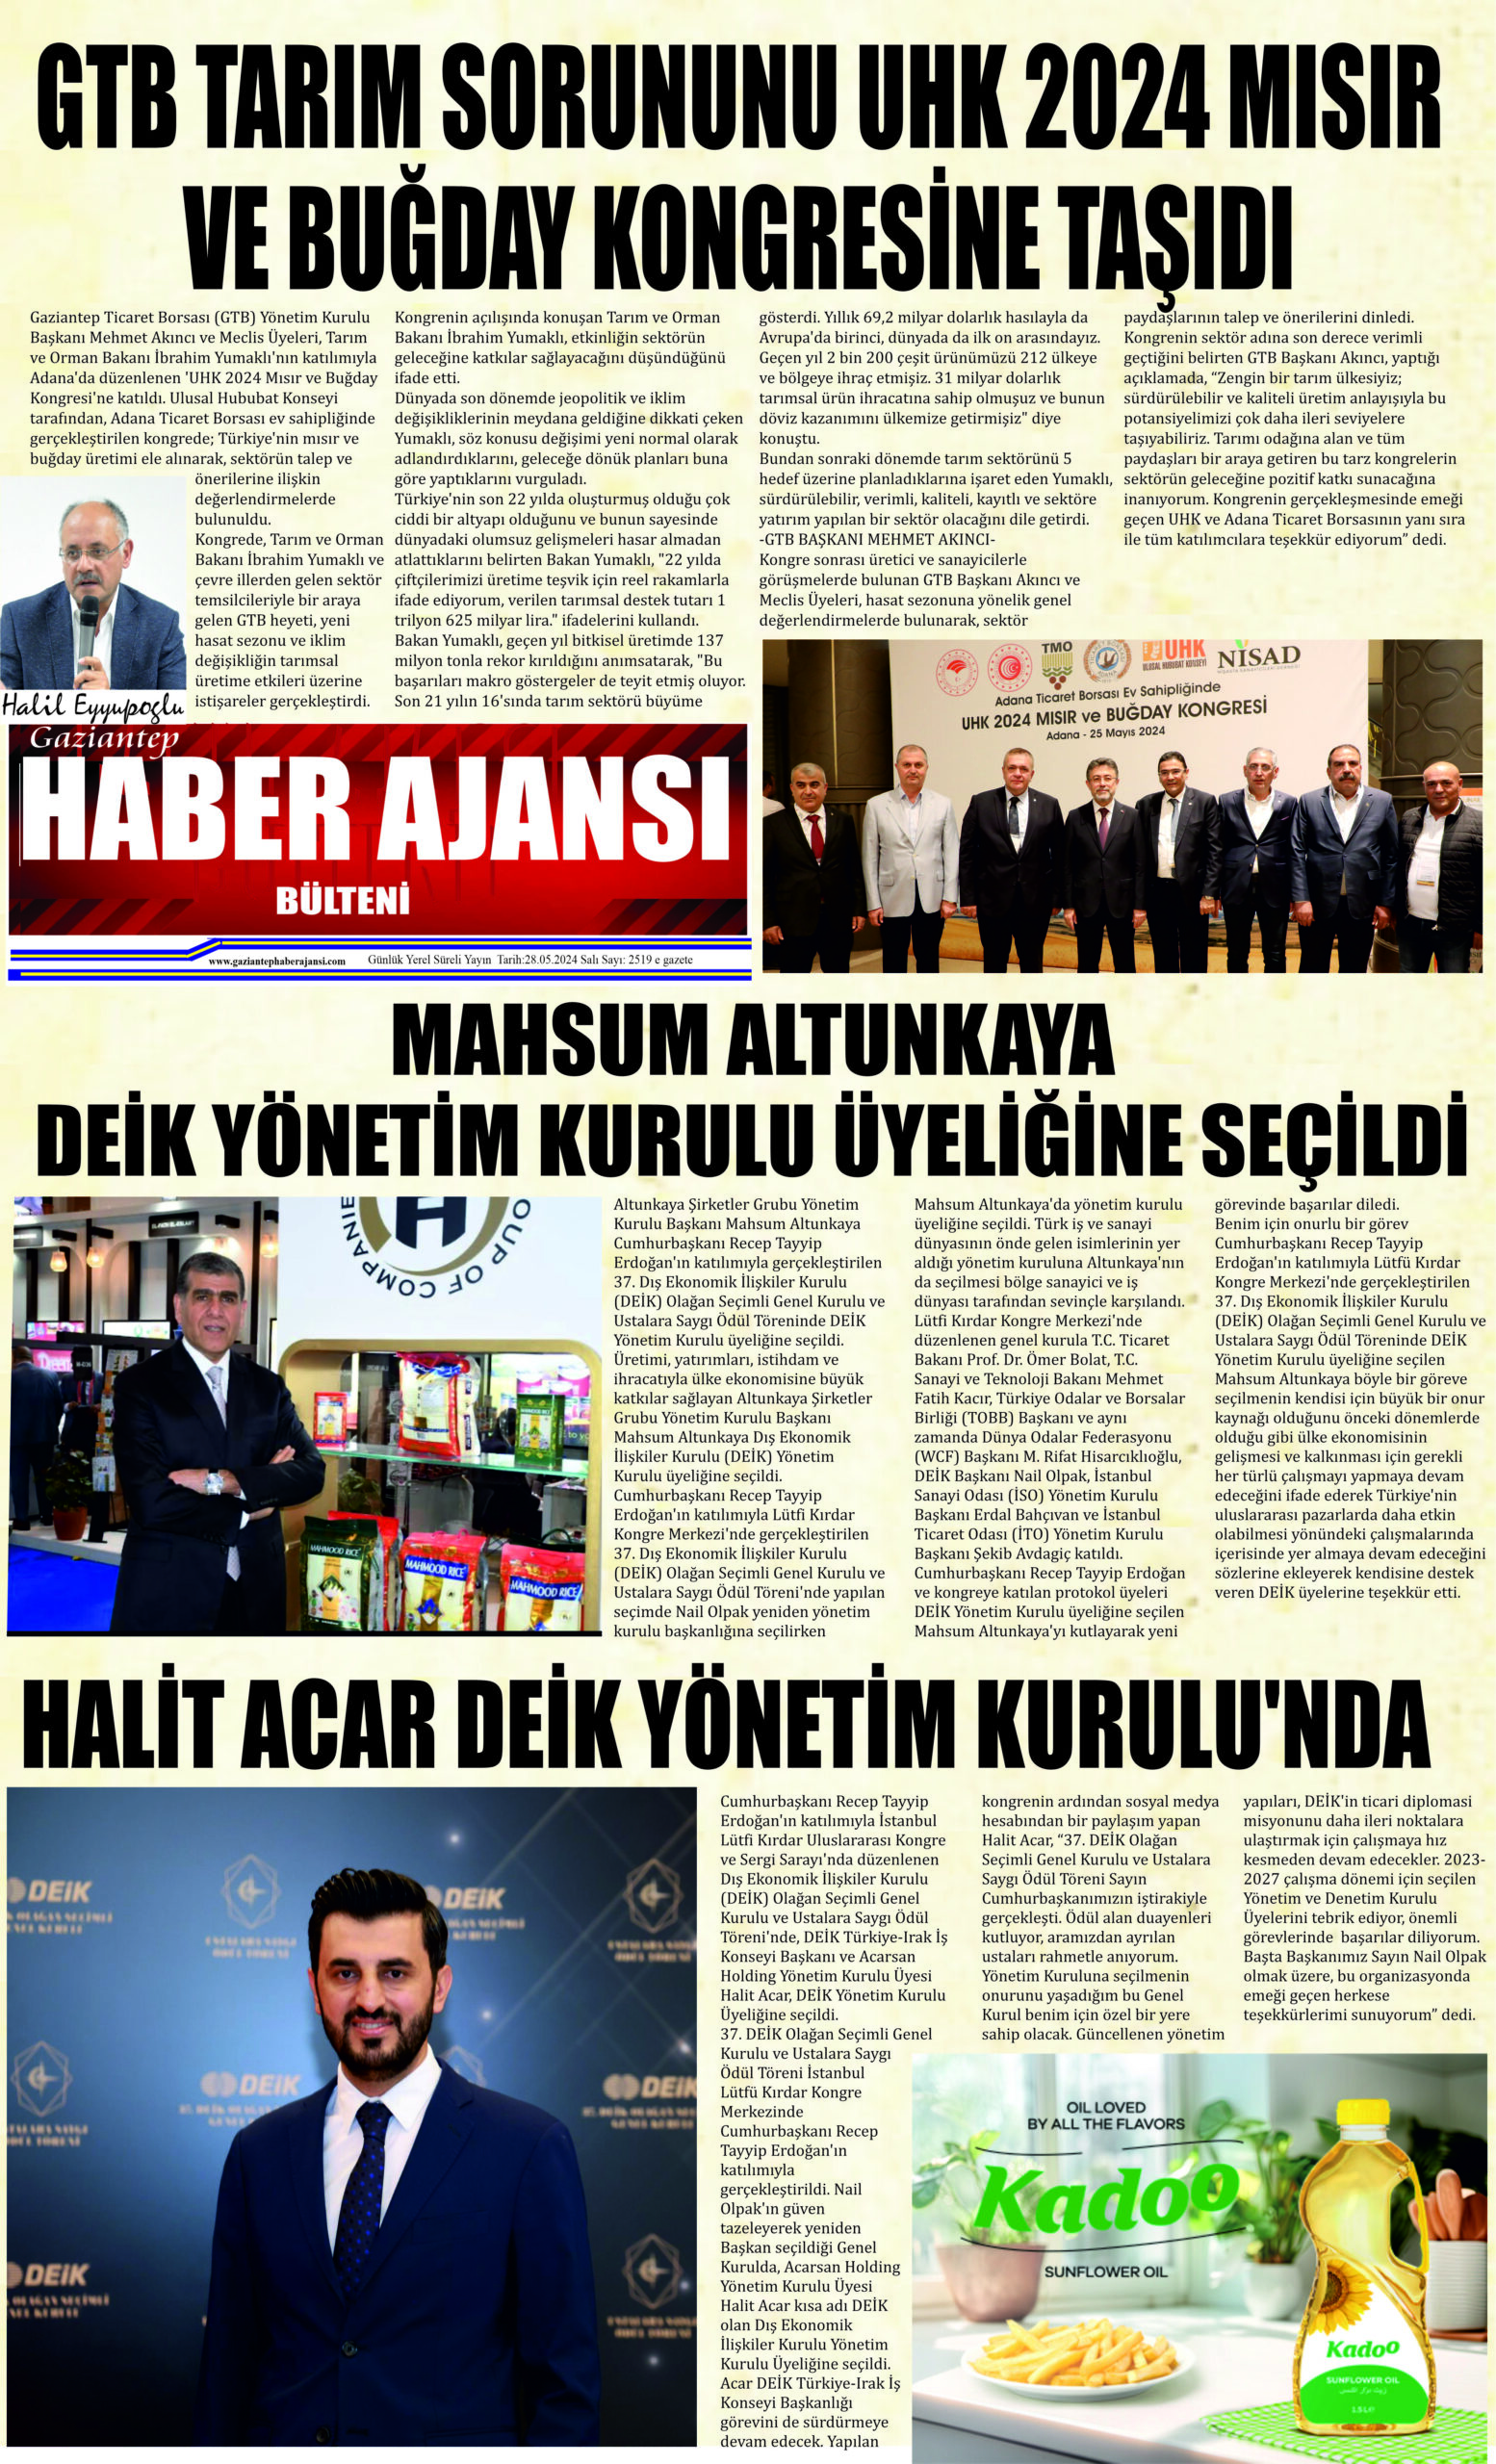 Gaziantep Haber Ajansı Bülteni Salı 28.05.2024 e gazete